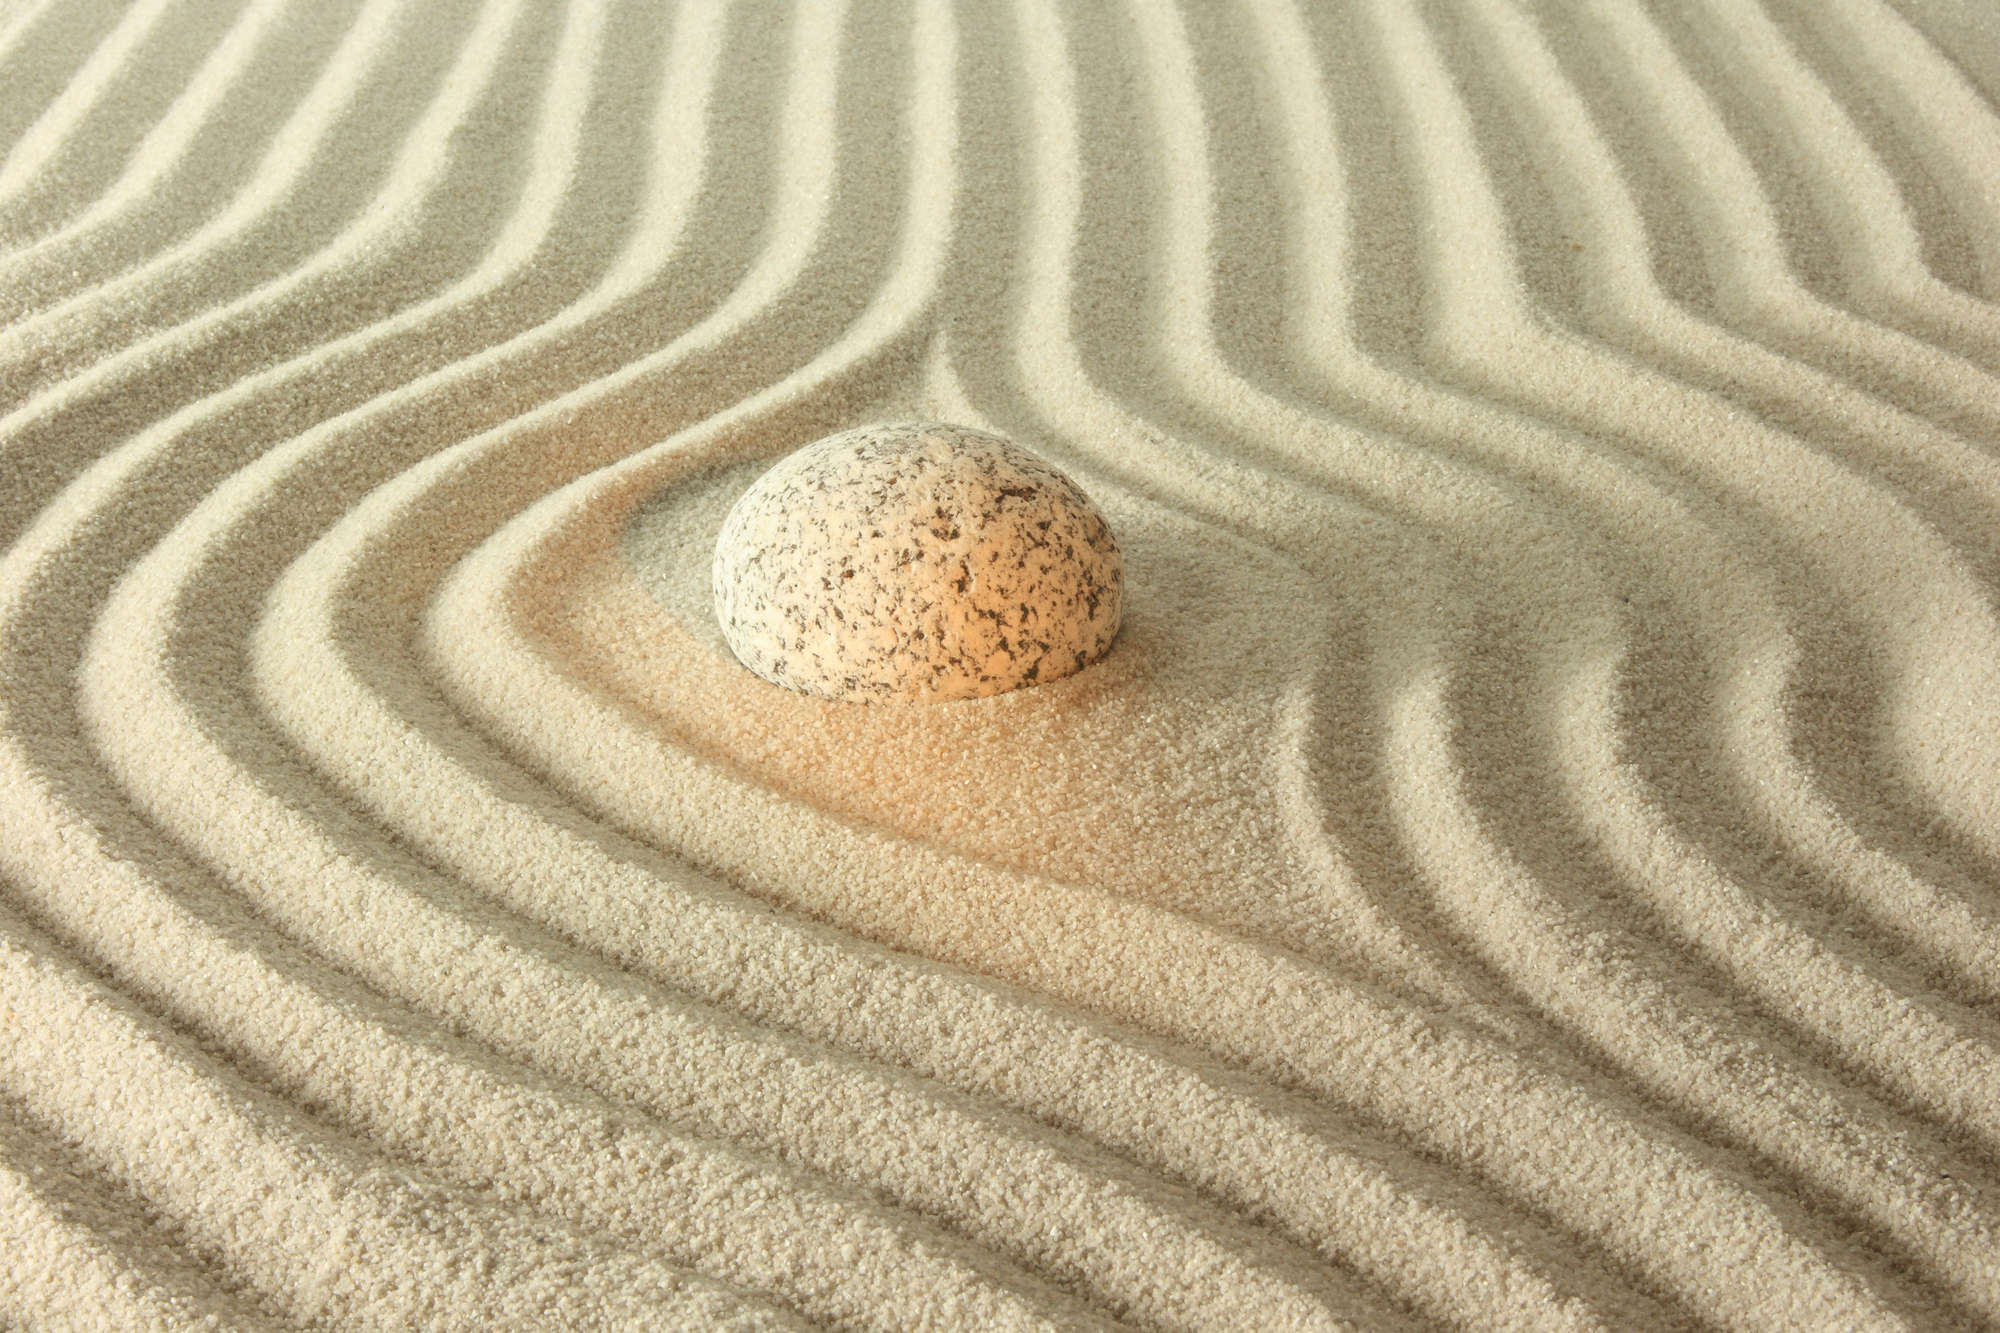             Spa Fototapete gelber Stein in geriffeltem Sand auf Strukturvlies
        